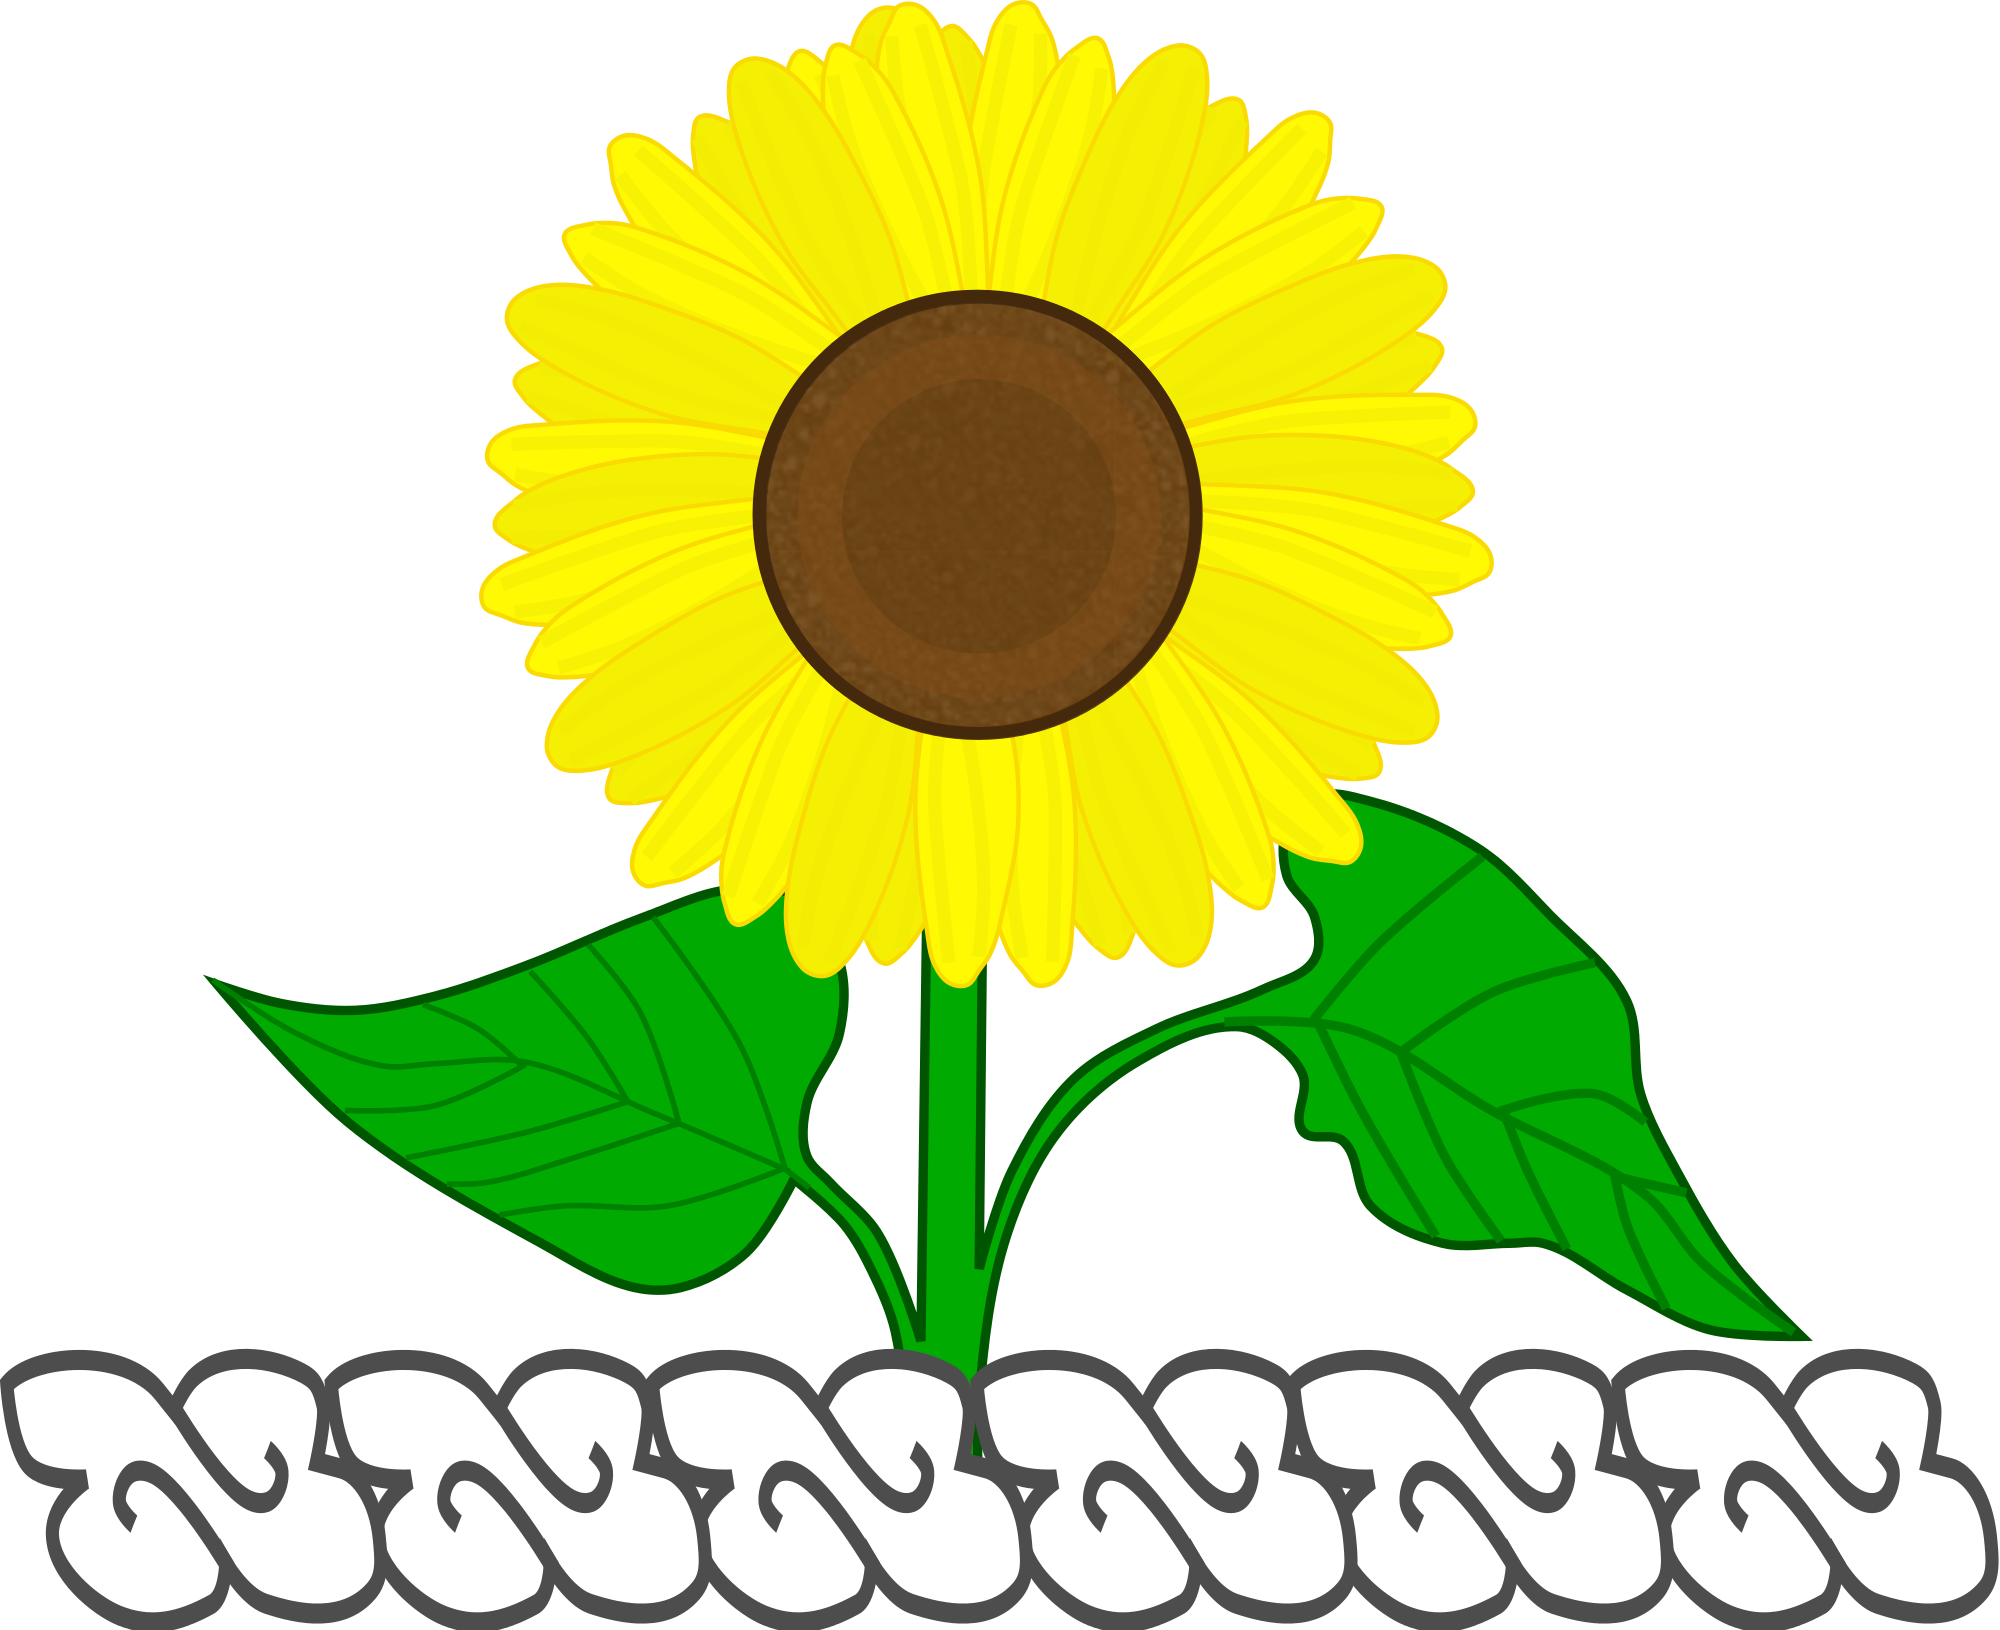 Open - Sunflower (2000x1630)